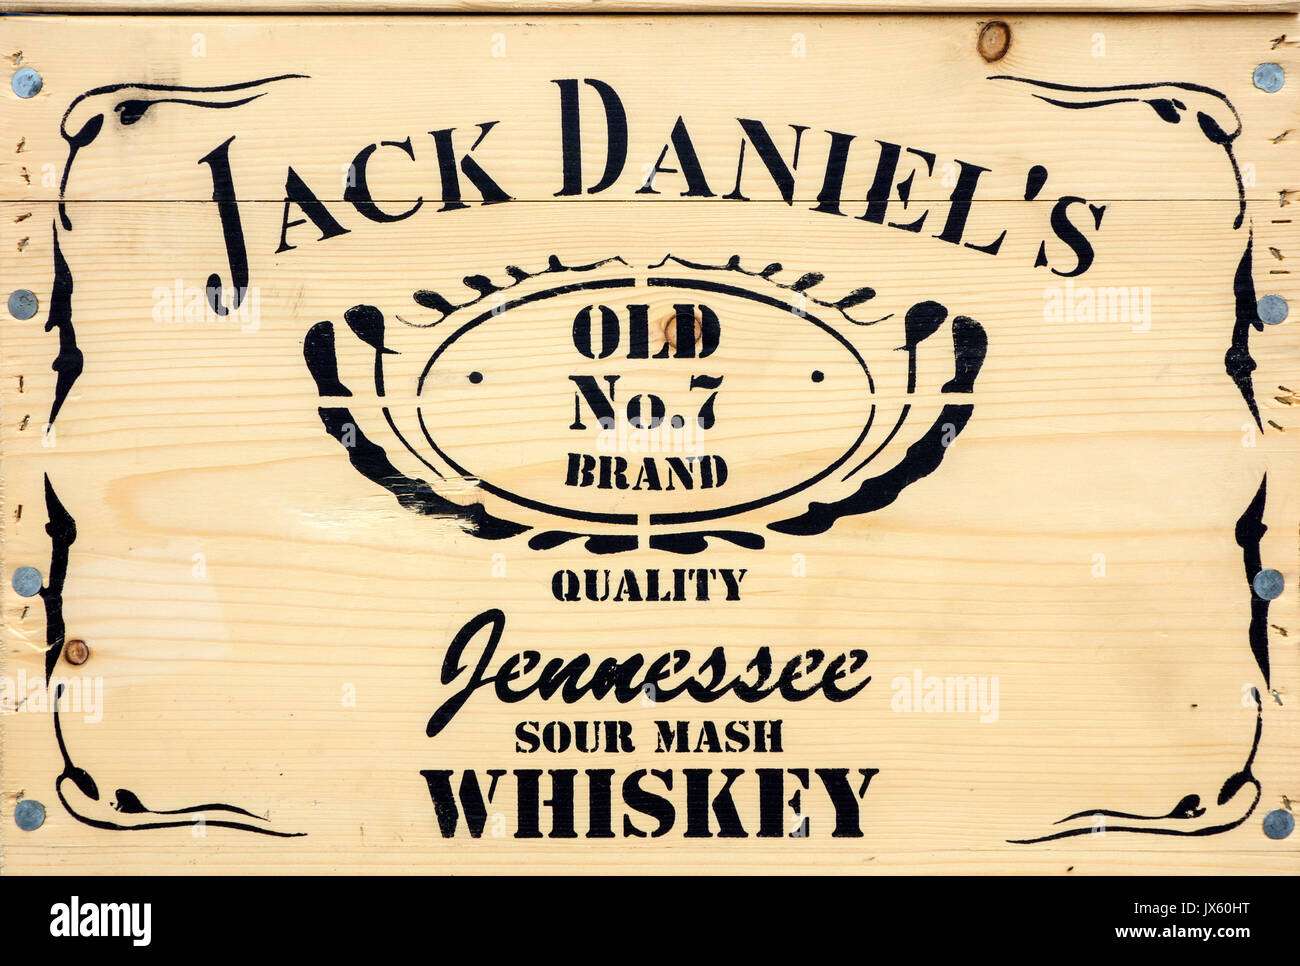 Le lettrage sur la caisse en bois contenant du whisky whiskey Jack Daniel's Old n°7, marque de Tennessee whiskey en Amérique du Nord, Etats-Unis Banque D'Images